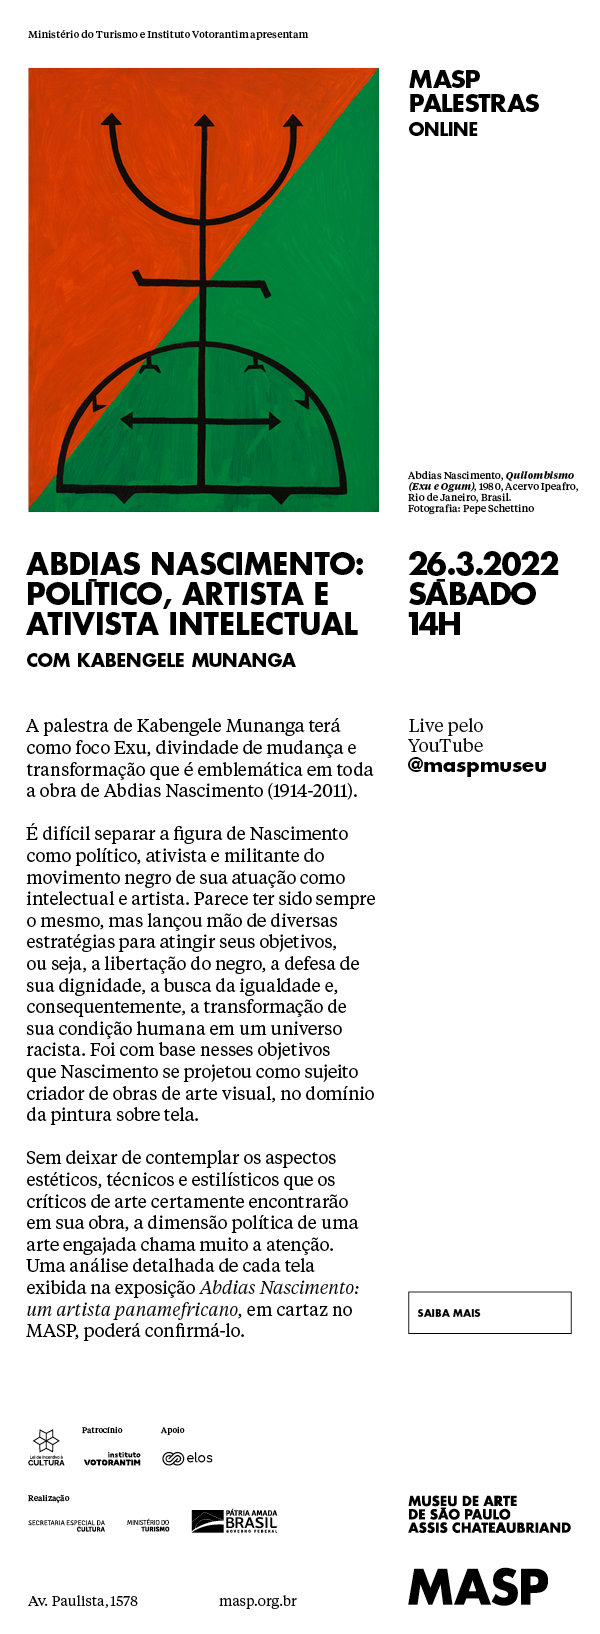 MASP Palestras | Abdias Nascimento: político, artista e ativista intelectual, com Kabengele Munanga